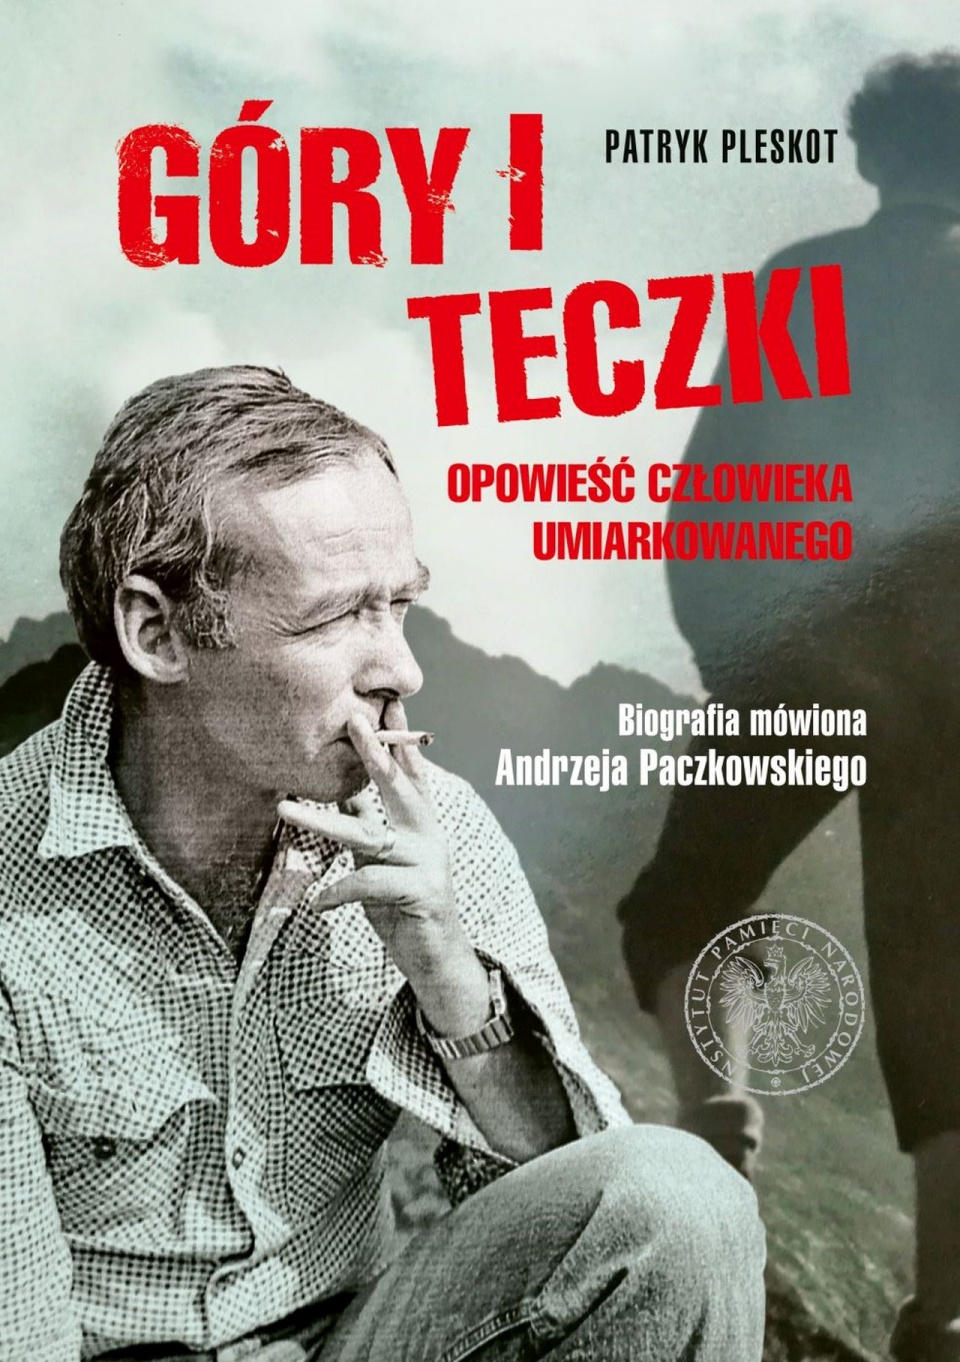 Okładka książki "Góry i teczki: opowieść człowieka umiarkowanego. Biografia mówiona profesora Andrzeja Paczkowskiego". źródło: https://ipn.gov.pl/